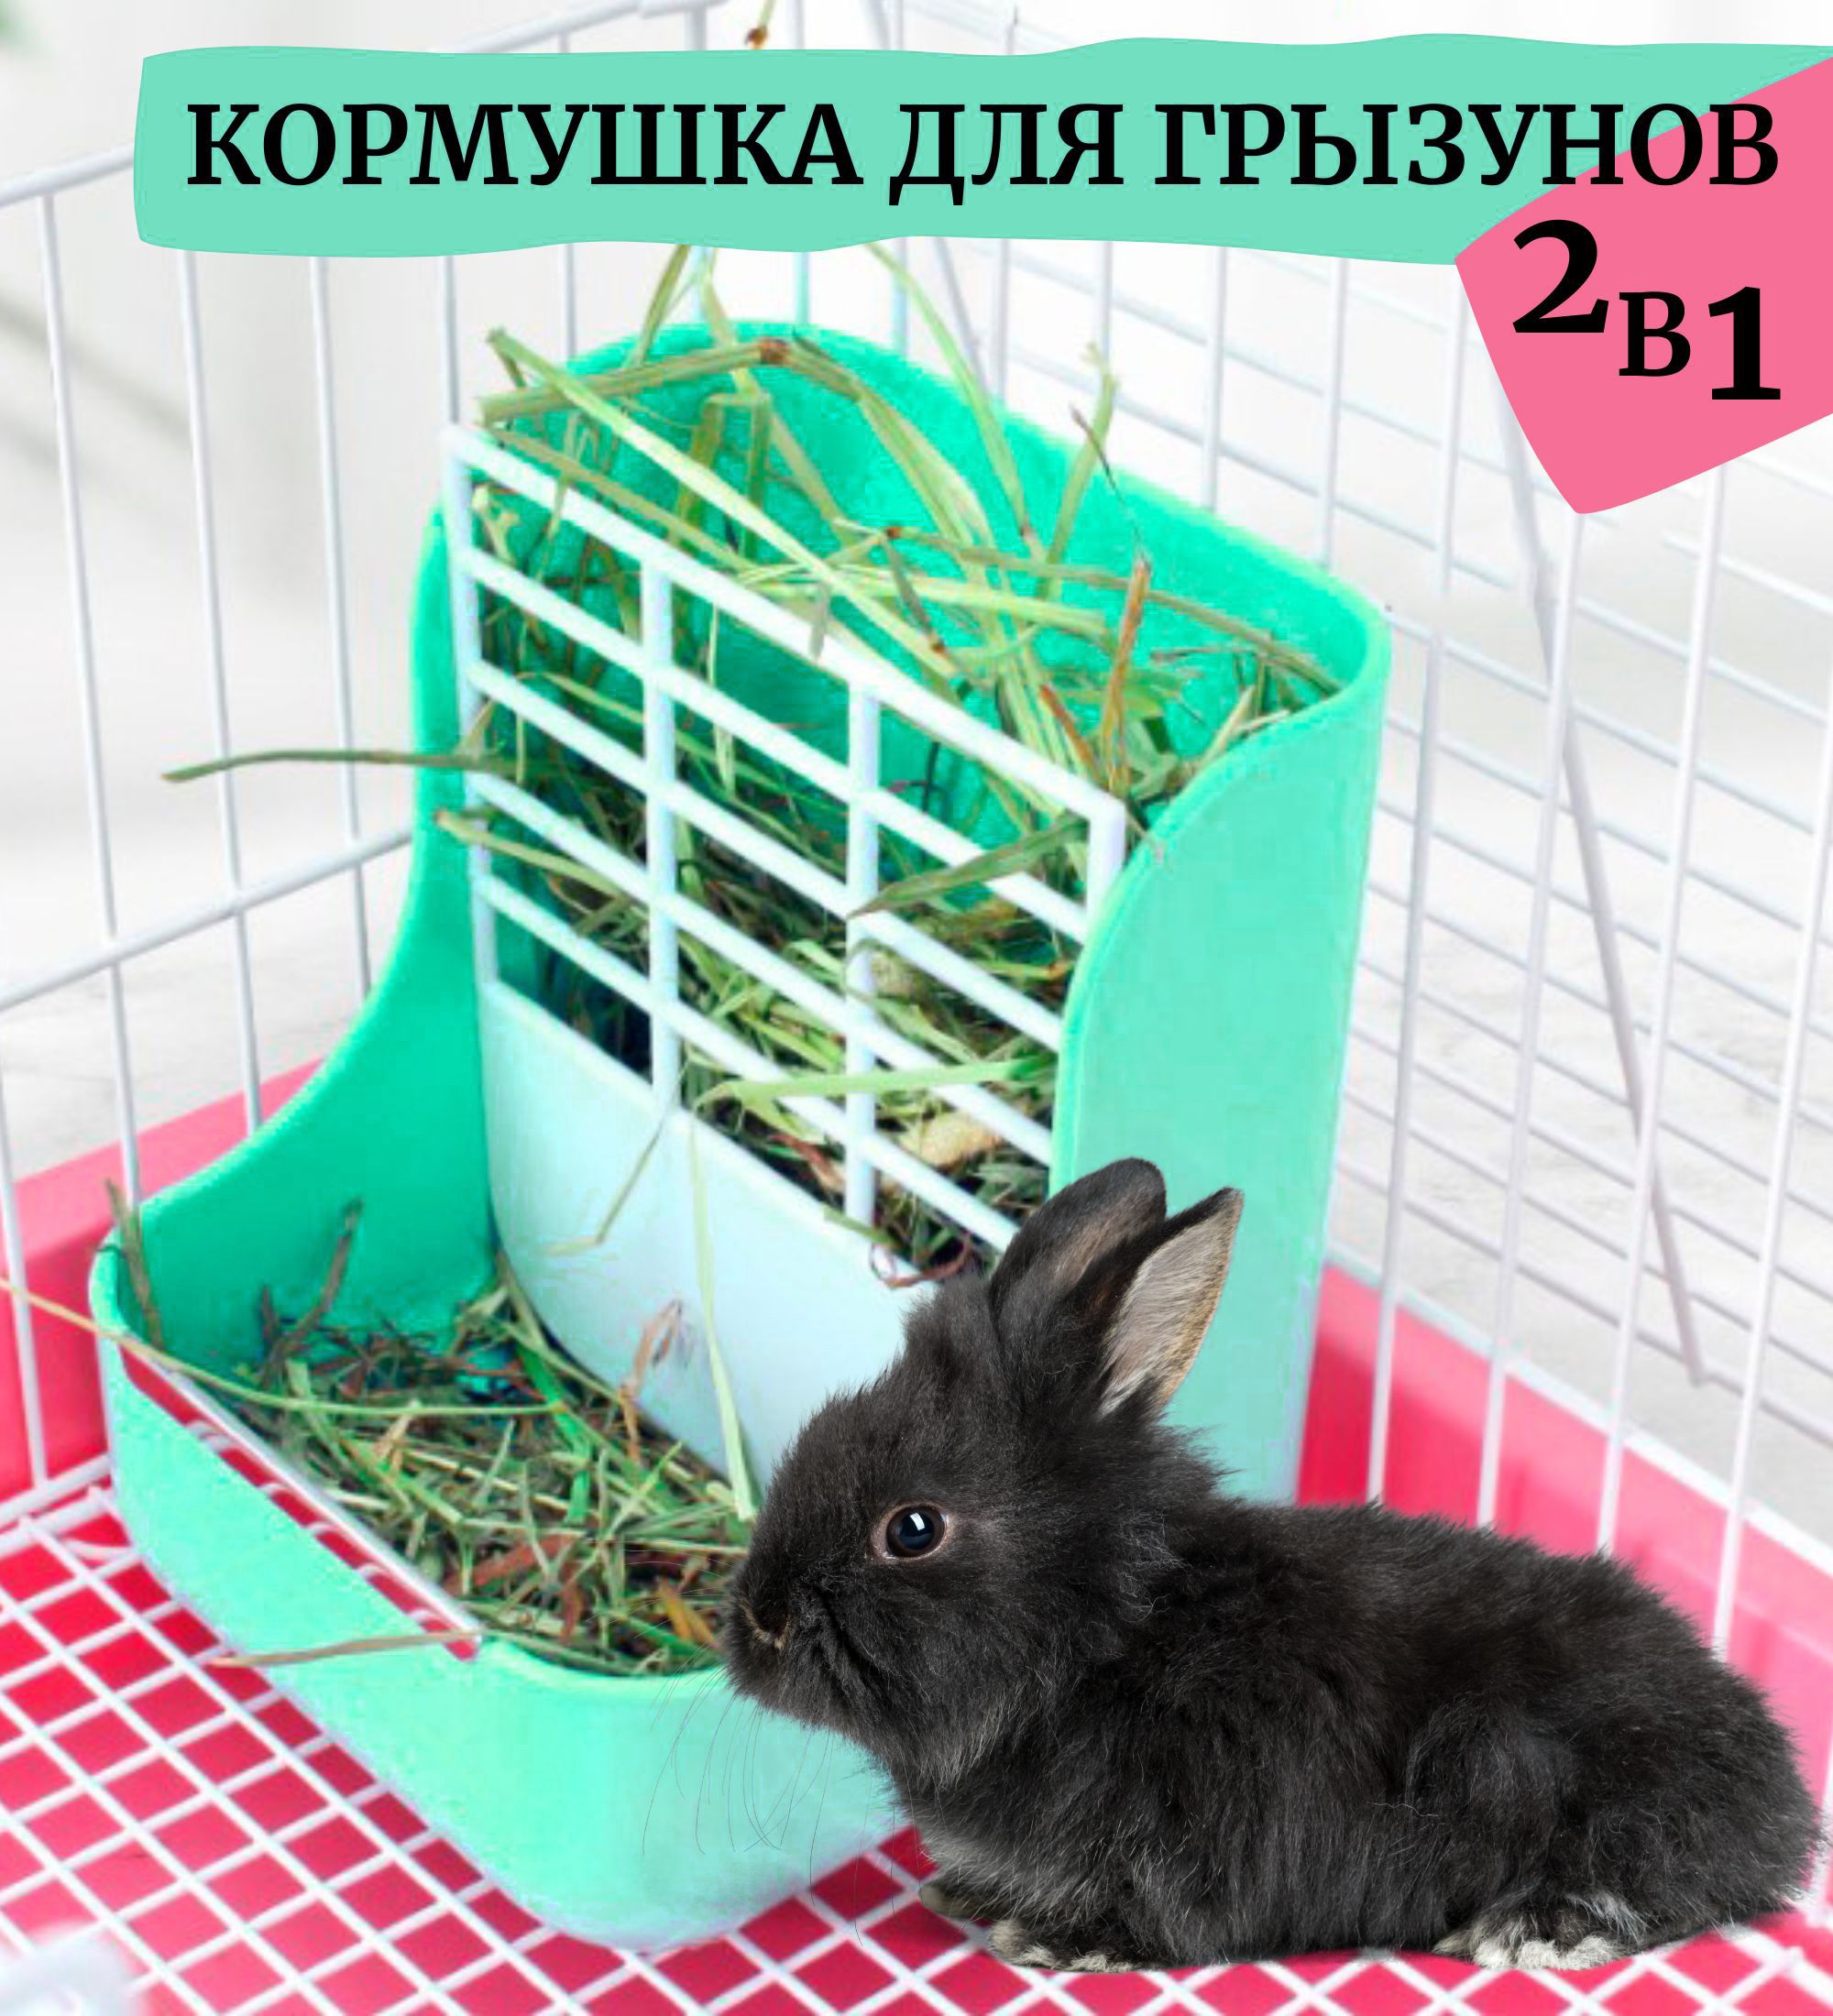 Бункерные кормушки для кроликов ᐅ Купить бункерную кормушку для кроликов | Ukrferma